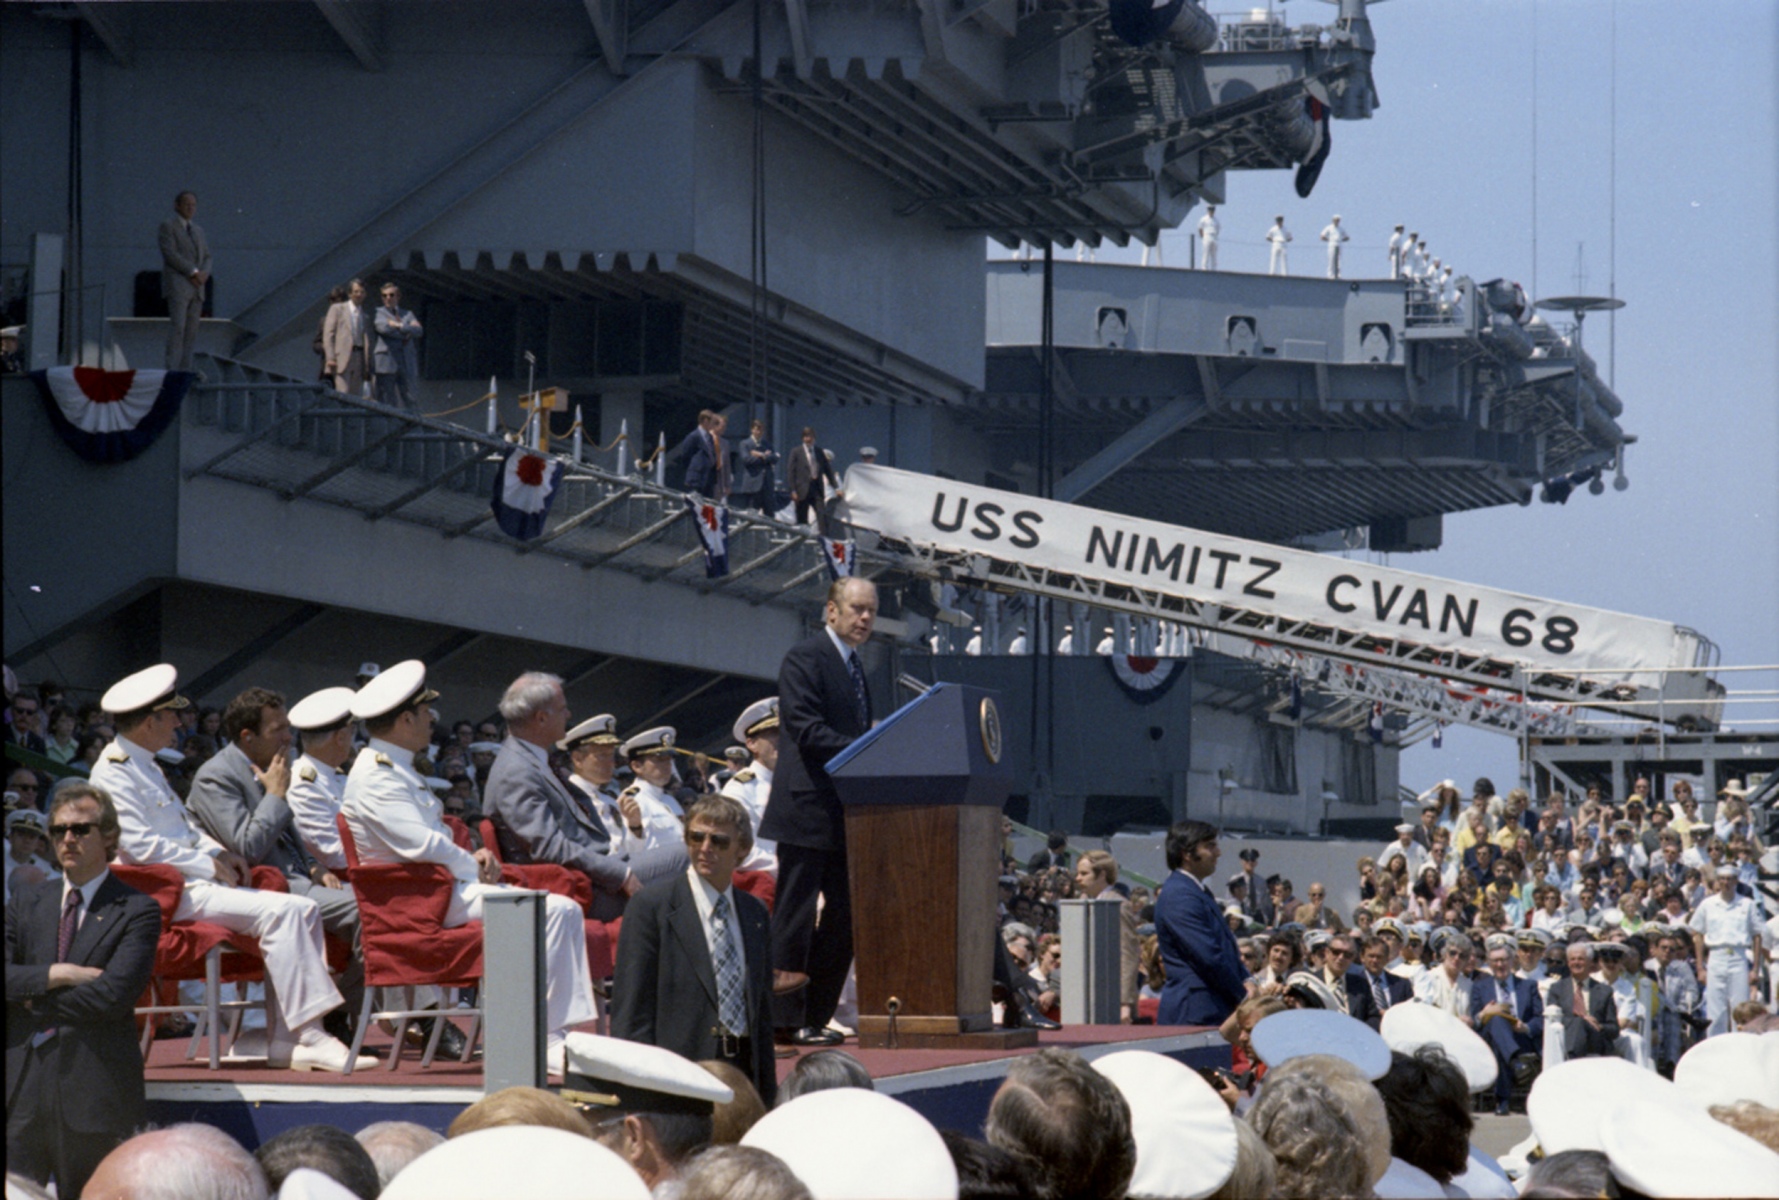 USS Nimitz (CVAN 68) Commissioning